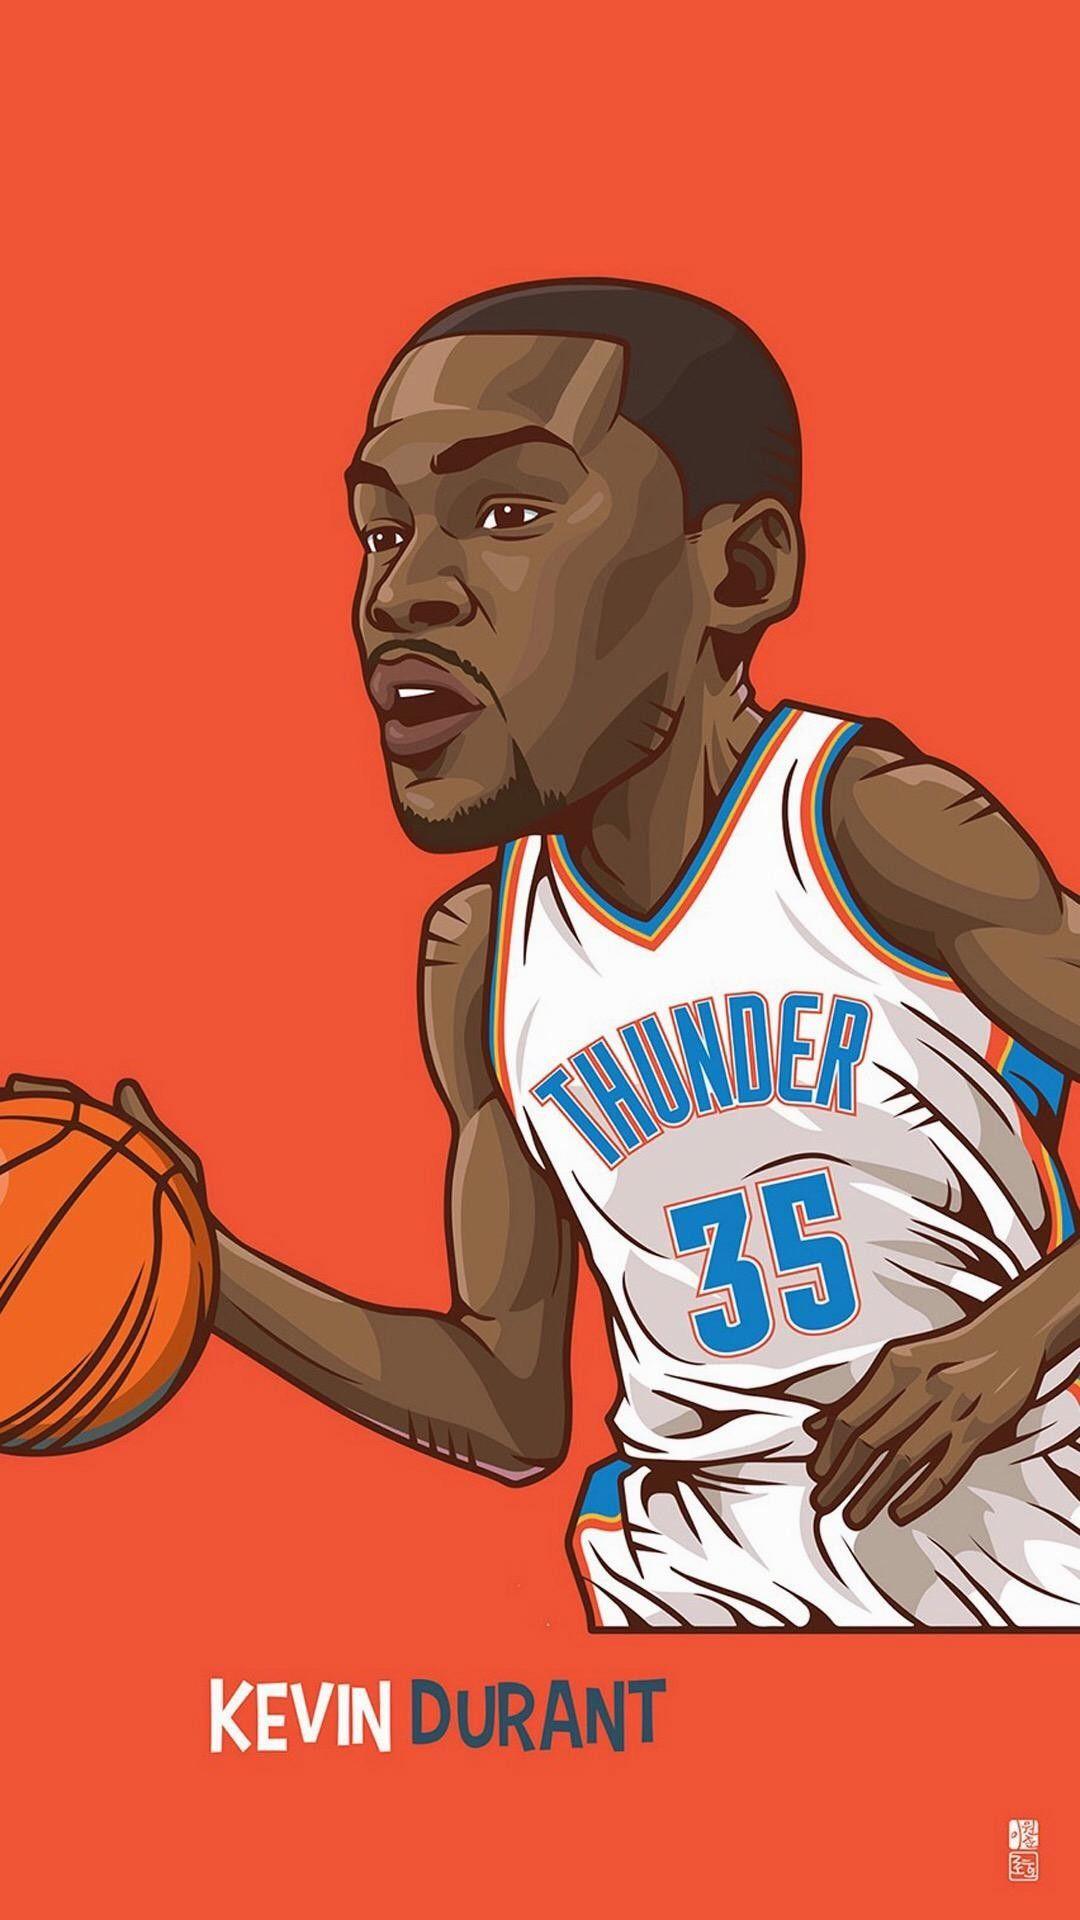 Cartoon NBA Players Wallpapers - Top Free Cartoon NBA Players